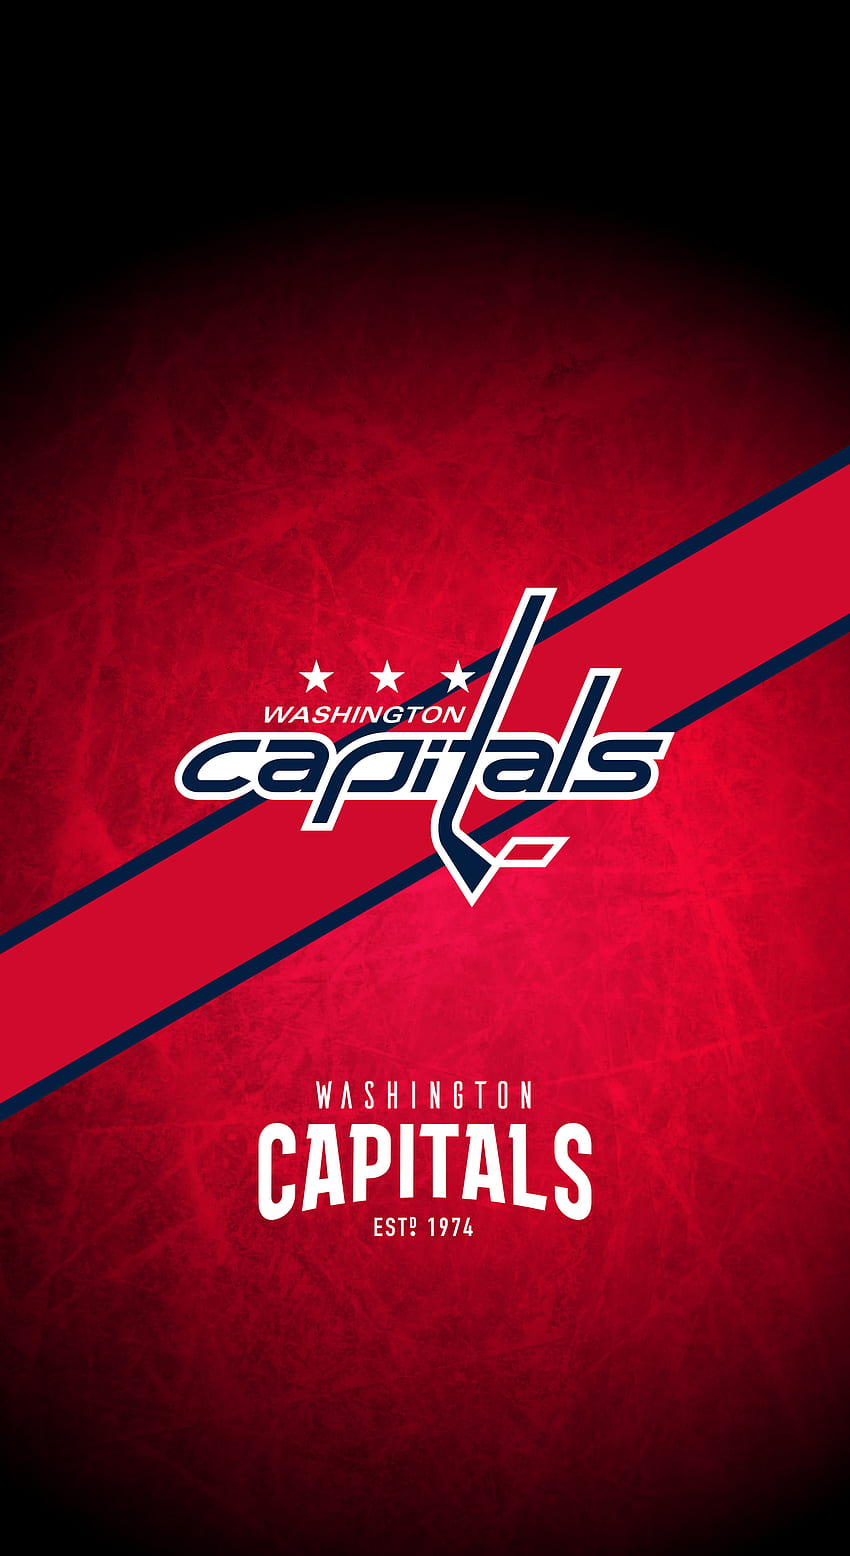 Washington Capitals (NHL) IPhone X XS XR Lock Screen . Washington Capitals Hockey, Capitals Hockey, Washington Capitals HD phone wallpaper